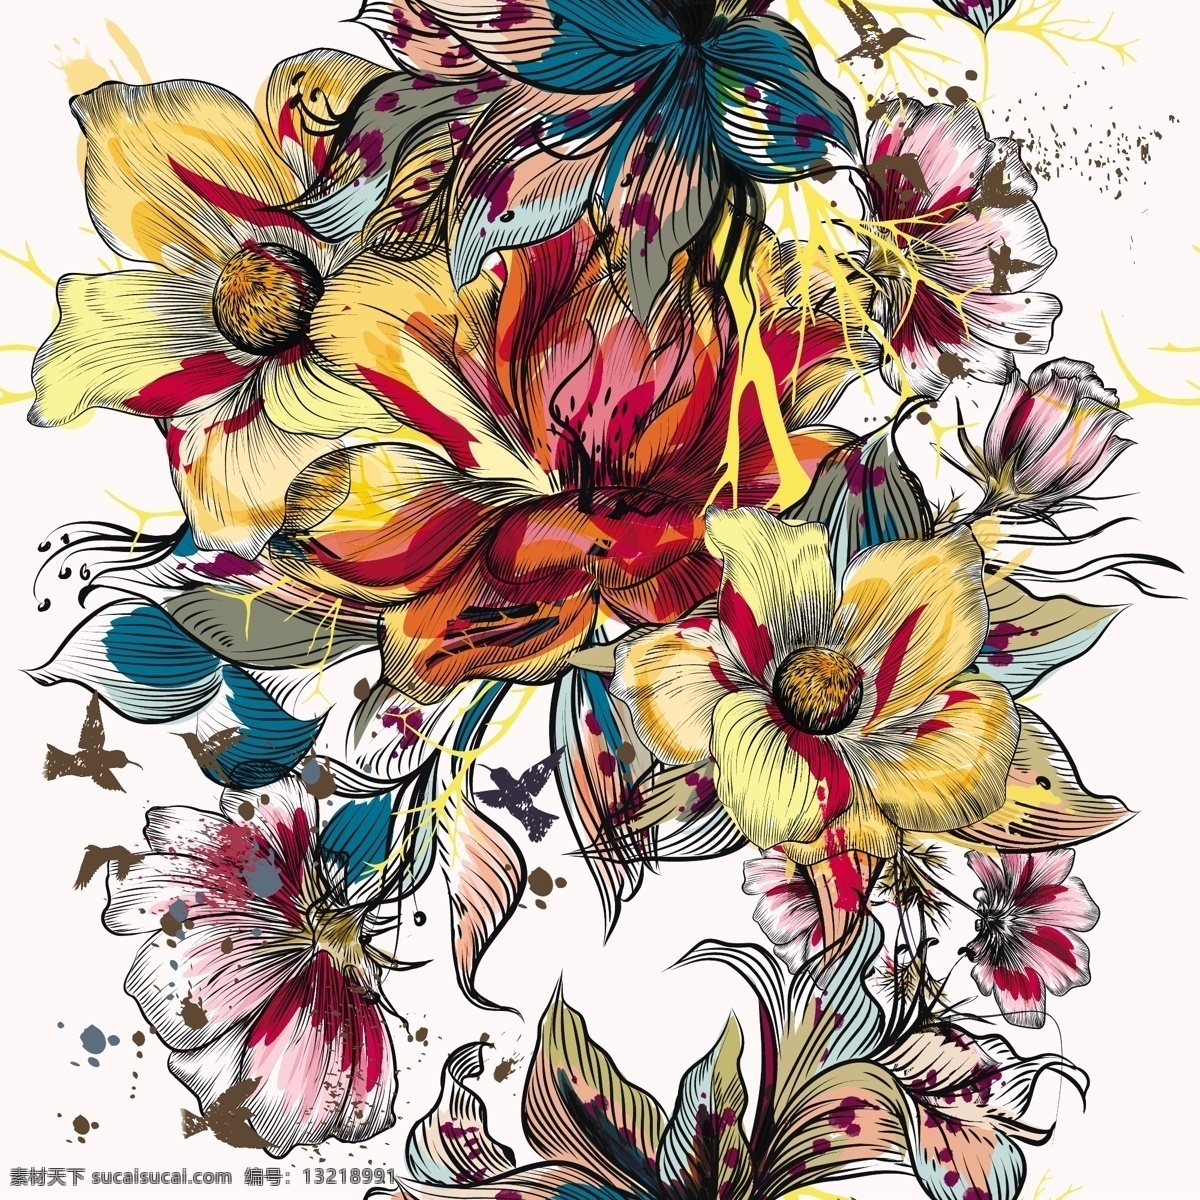 花卉图案设计 背景 图案 花卉 叶 花卉背景 花卉图案 墙纸 颜色 树叶 丰富多彩 无缝模式 图案背景 无缝